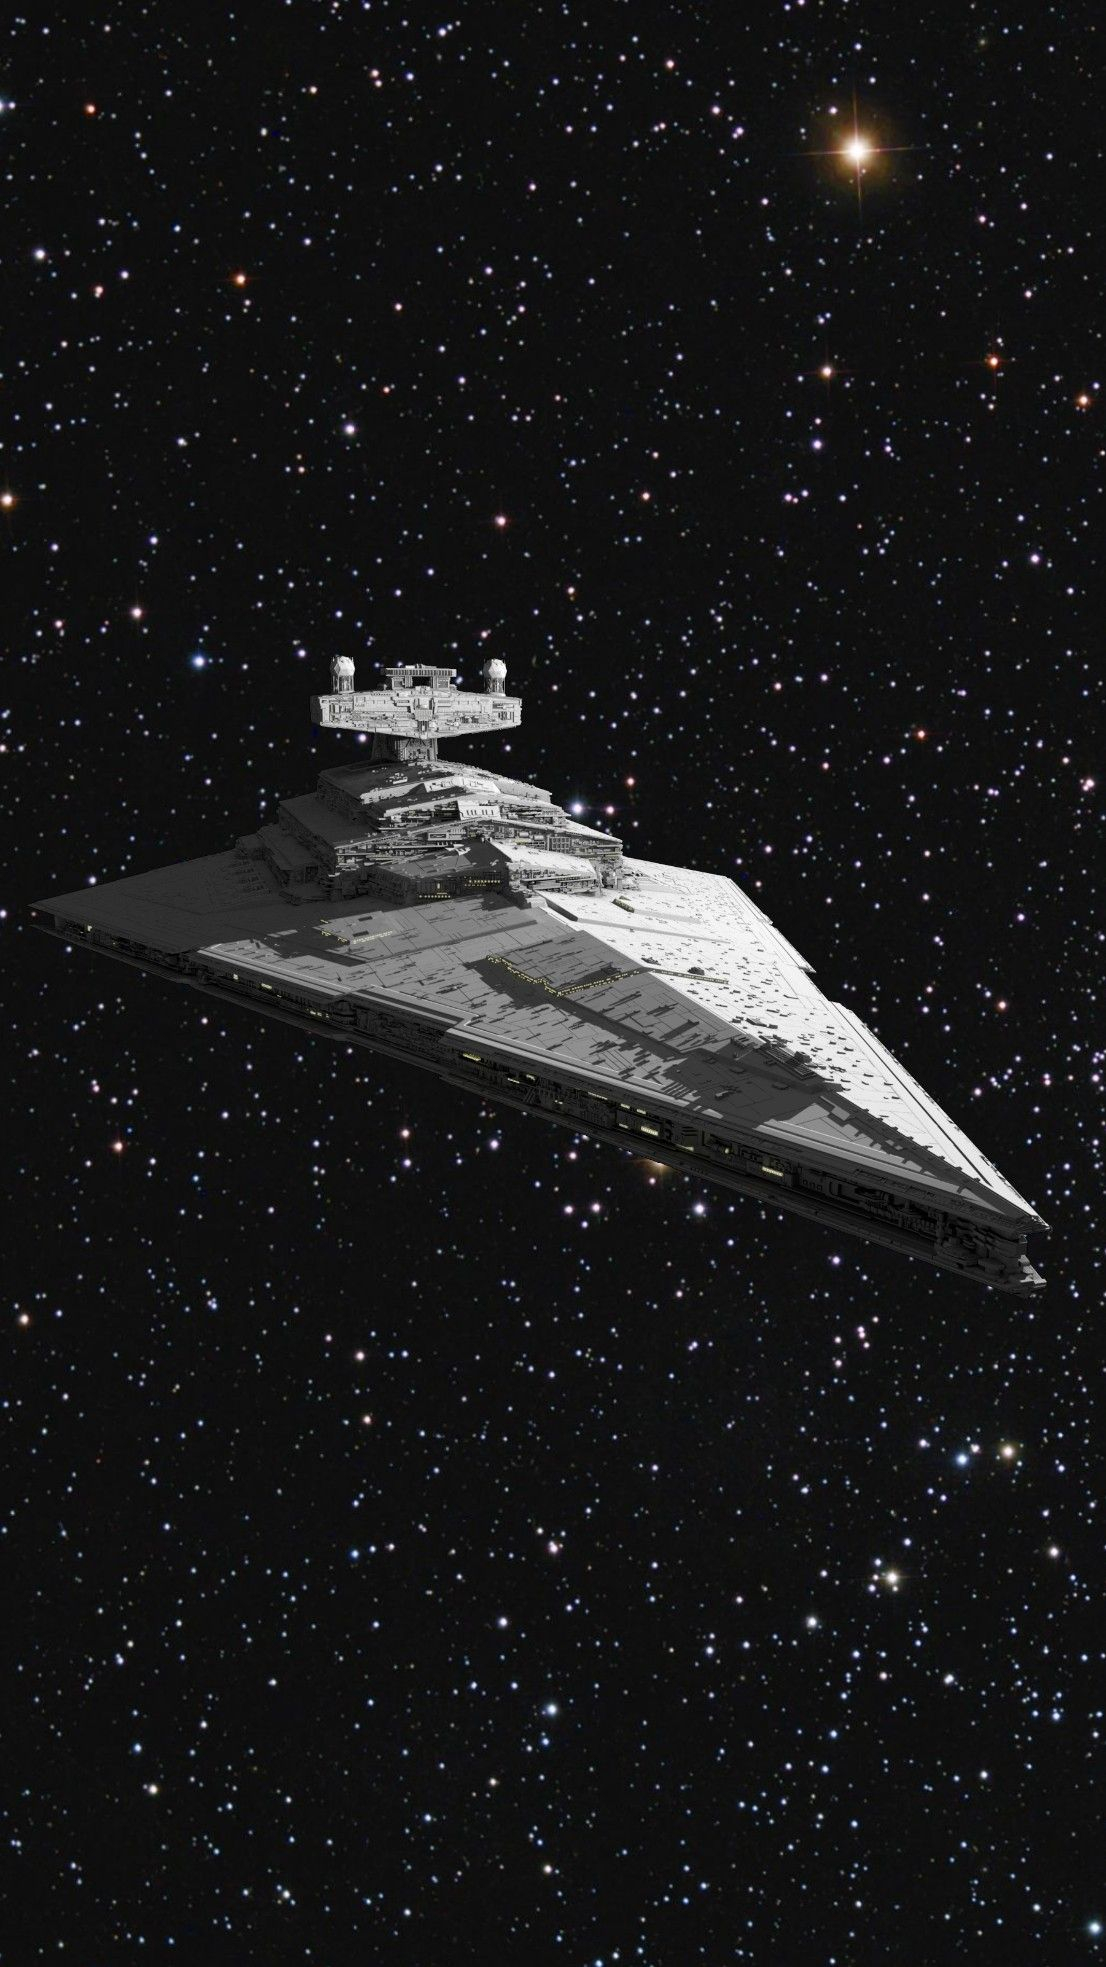 1106x1967 Star Wars: Star Destroyer | Star wars concept art, Star destroyer, Star wars pictures